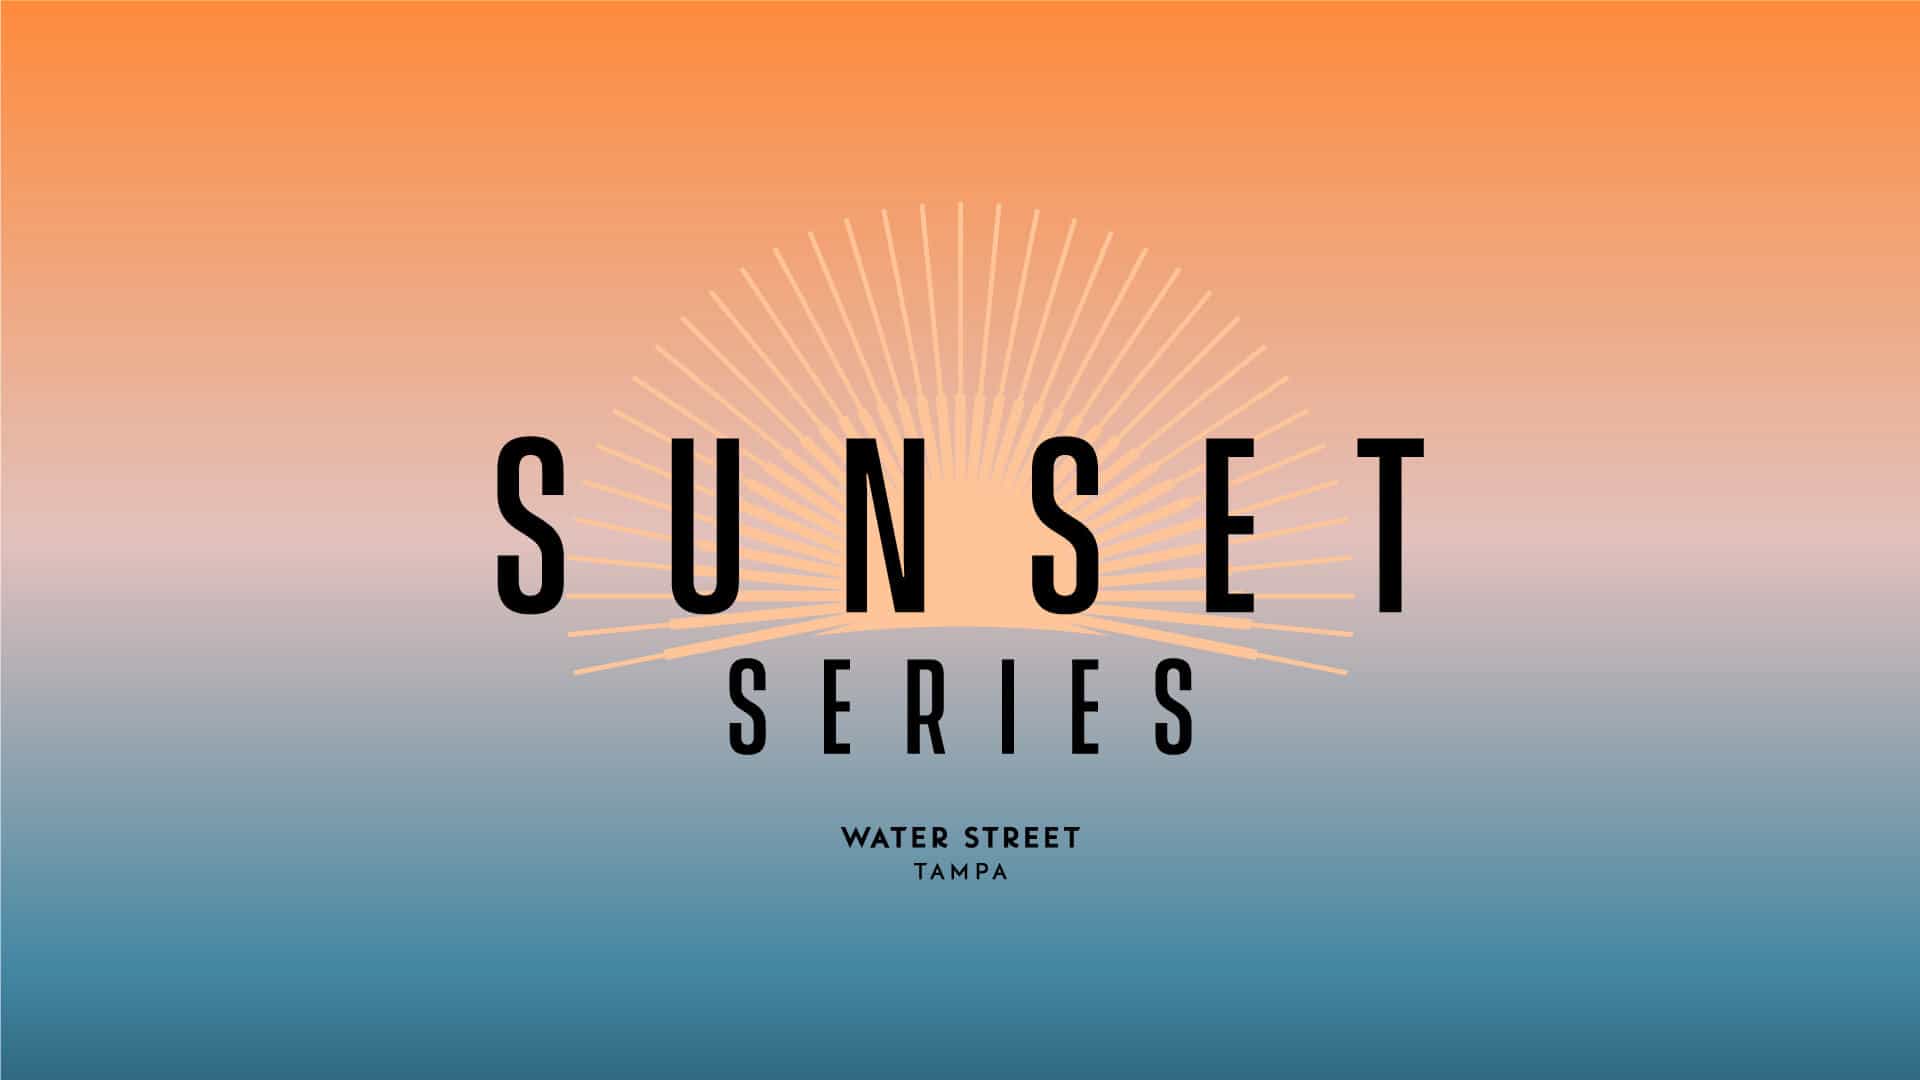 Sunset Series: Street Rhythms at Water Street Tampa